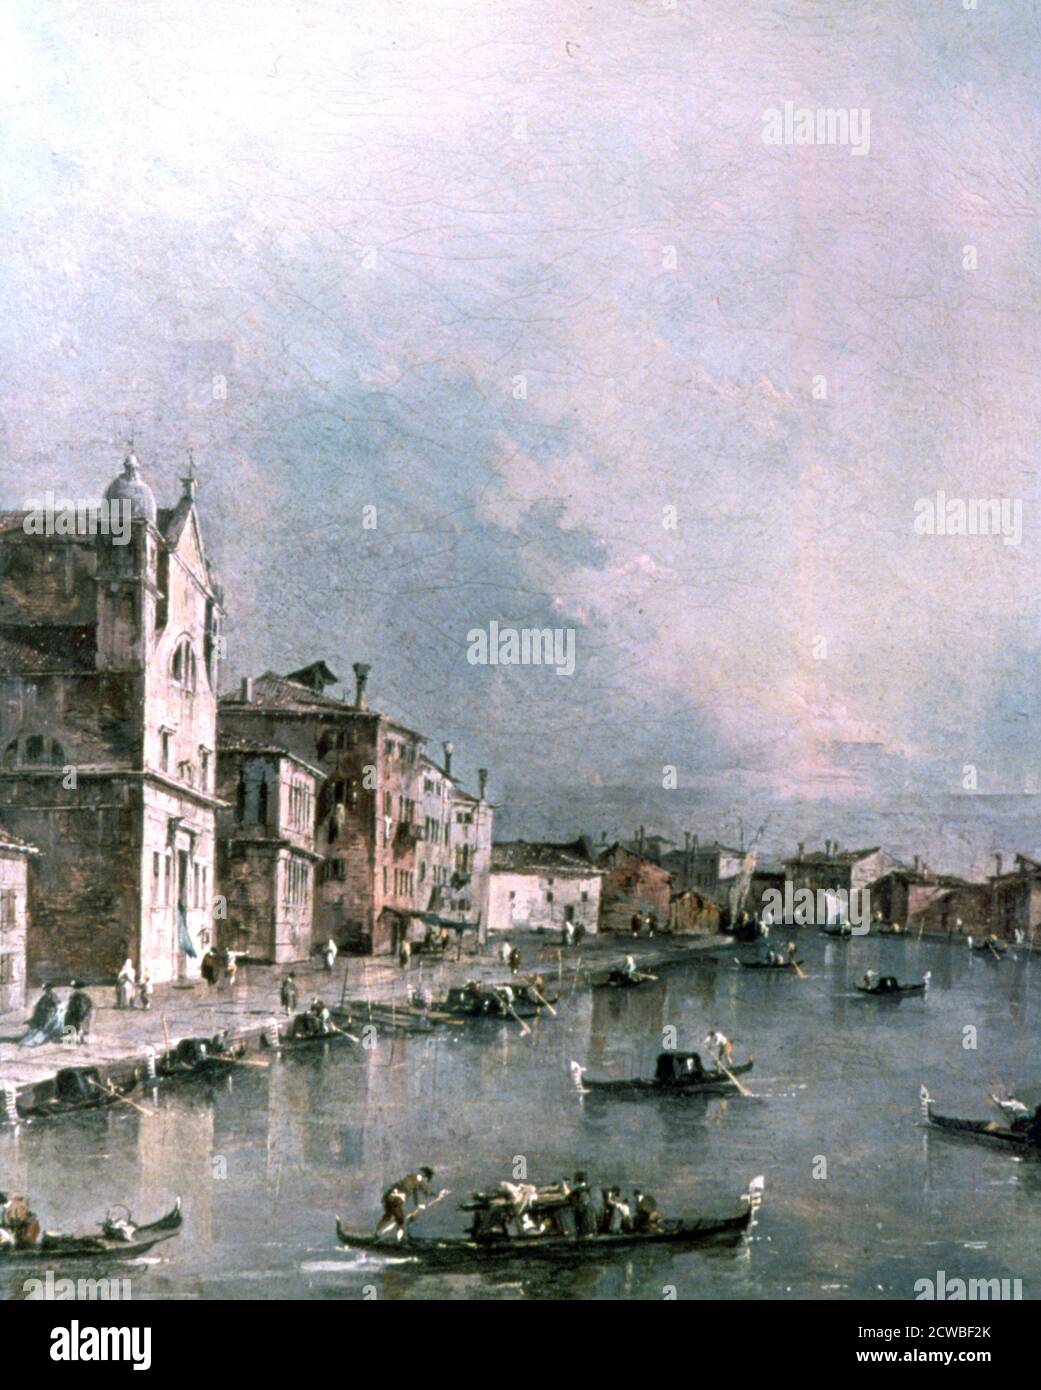 Il Canal Grande, Venezia', c1732-1790. Artista: Francesco Guardi. Francesco Guardi (1712-1793) è stato un pittore italiano, nobile e membro della Scuola Veneziana. Foto Stock